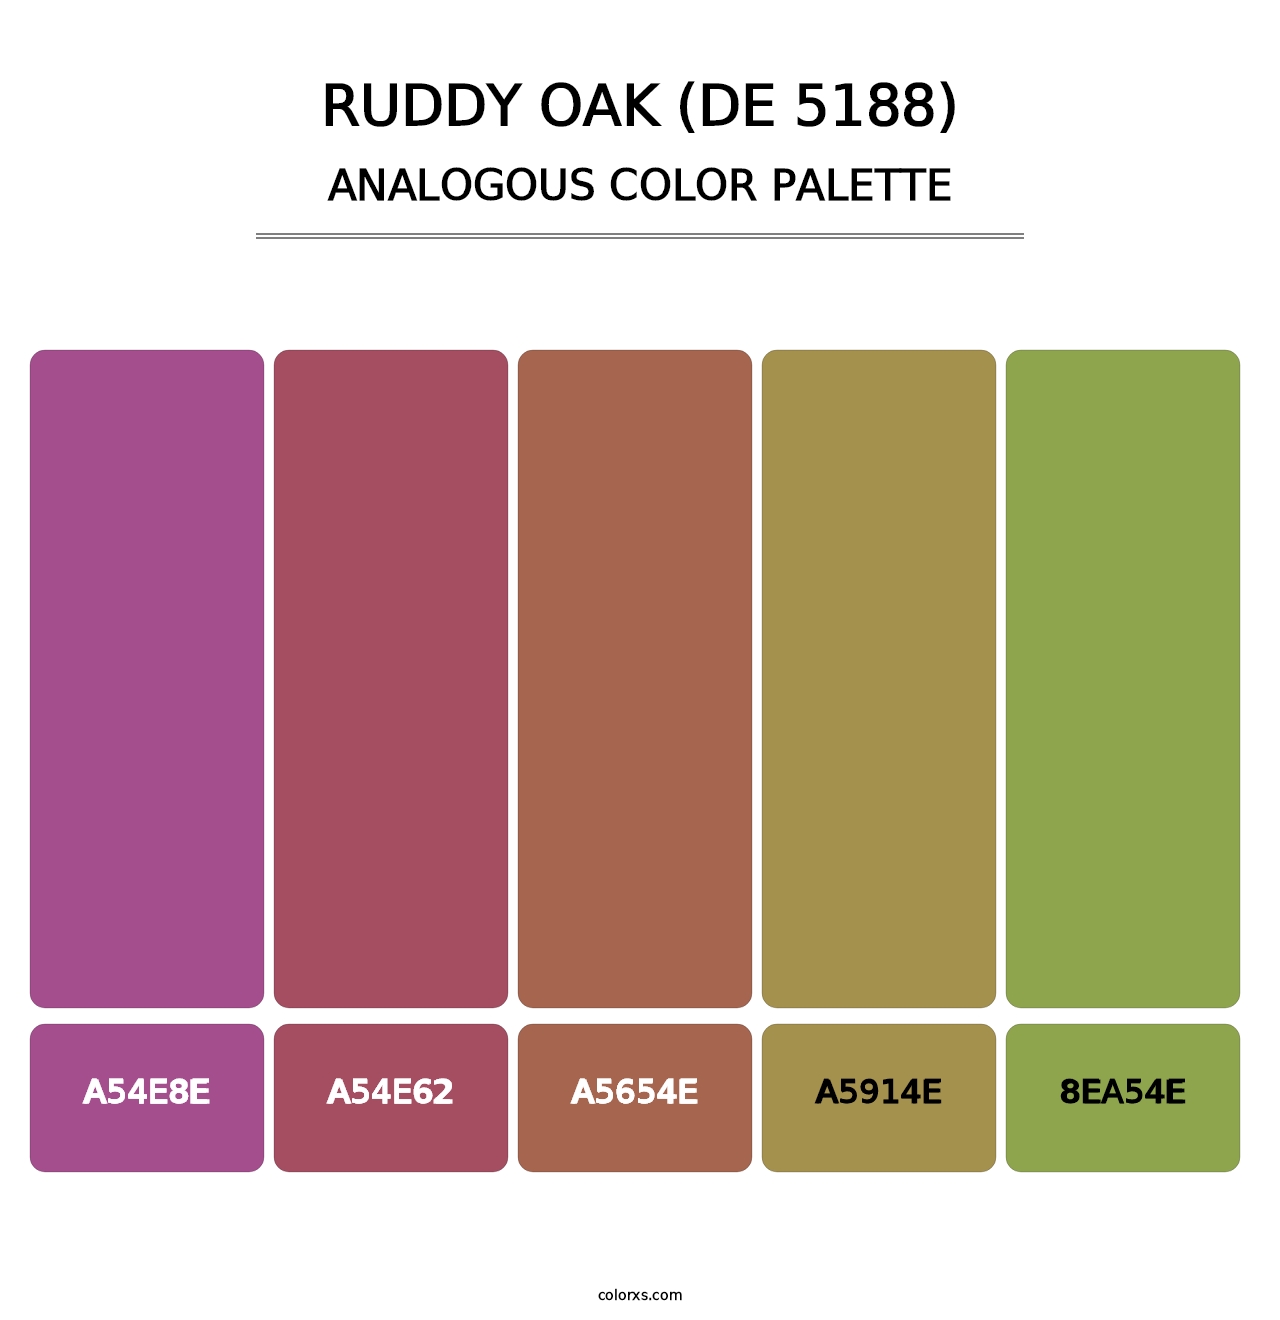 Ruddy Oak (DE 5188) - Analogous Color Palette